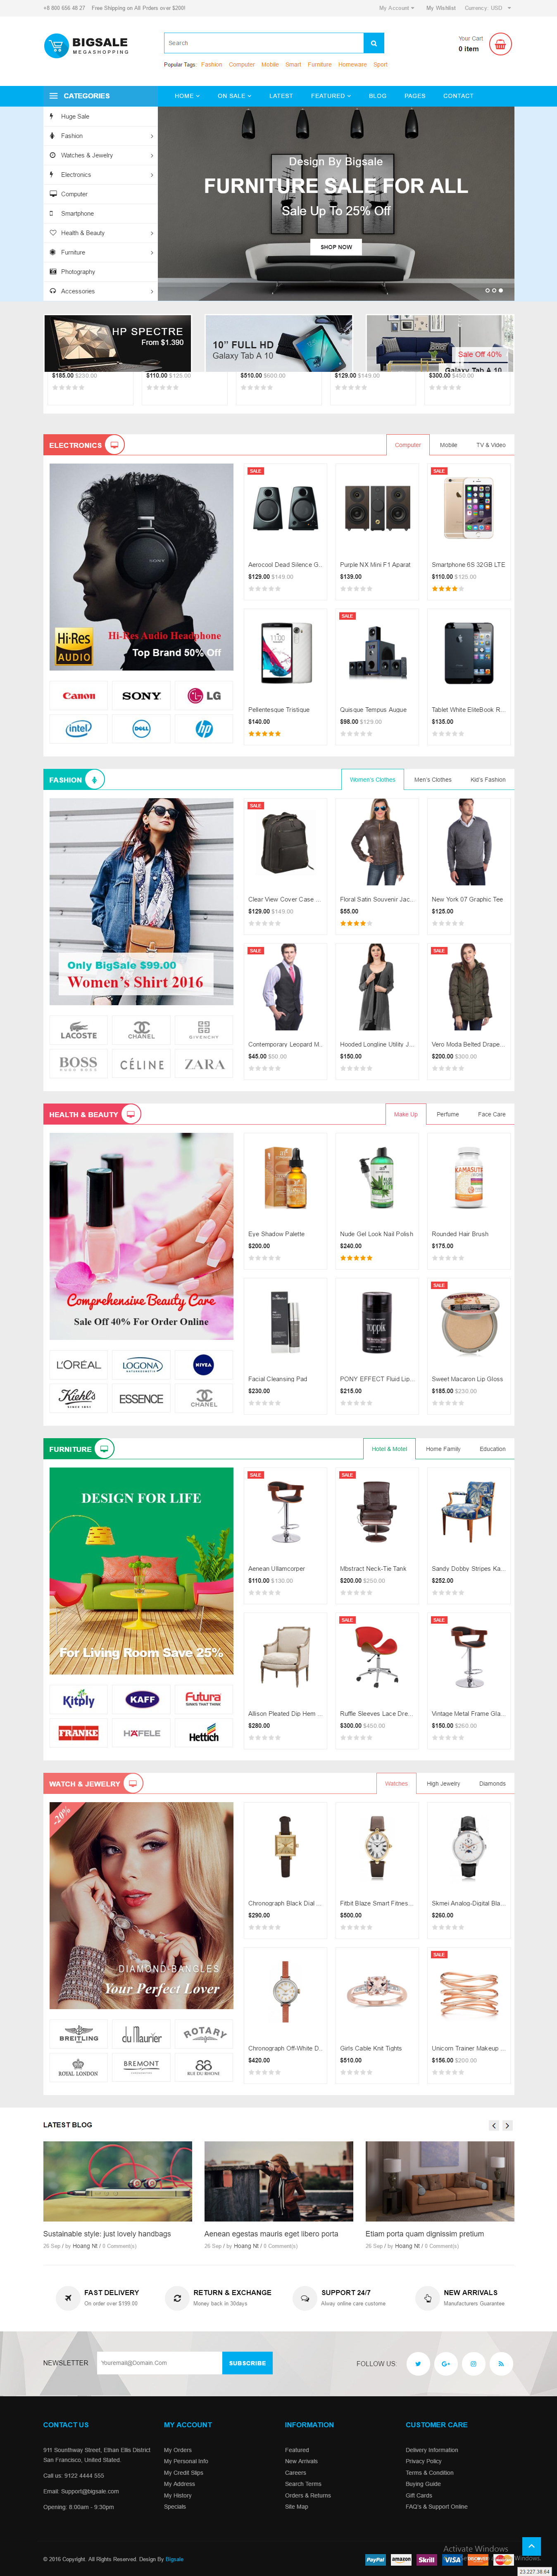 Mẫu thiết kế website thương mại điện tử